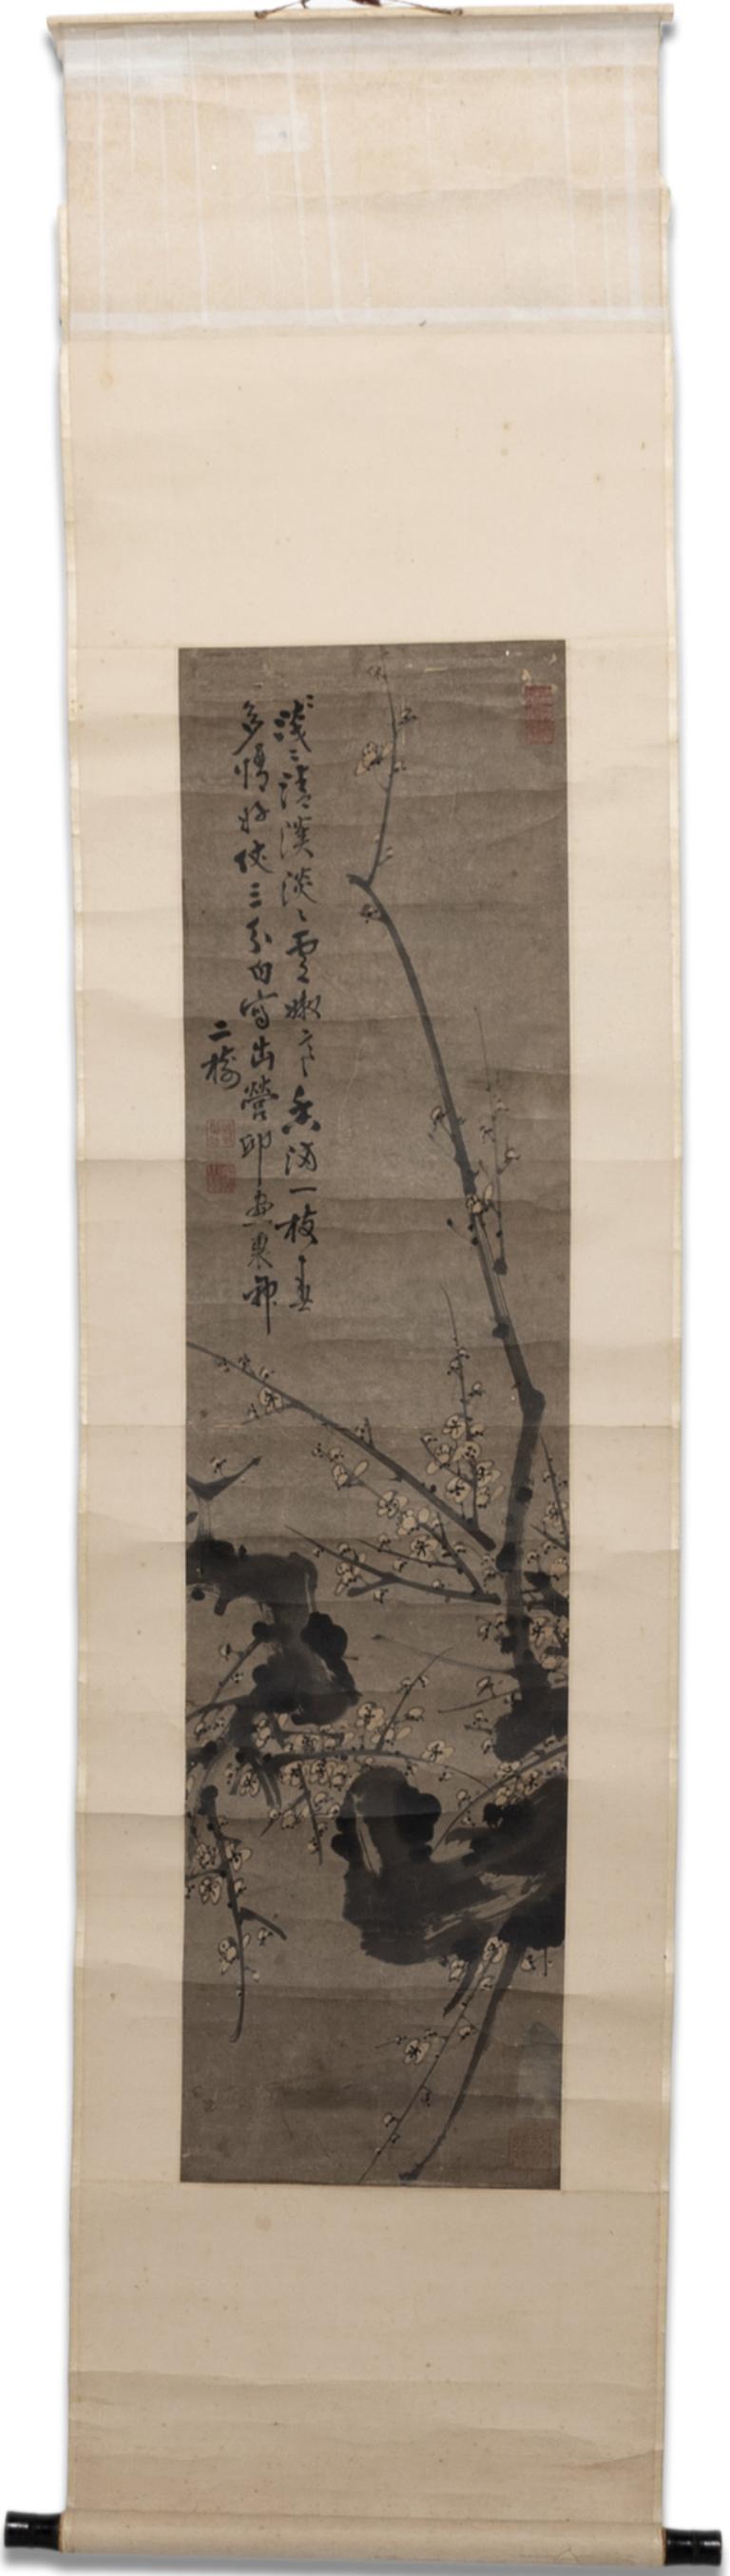 Figurative Art Tong Yu - ""Rouleau suspendu de branches de prunus"", encre sur papier, 1850